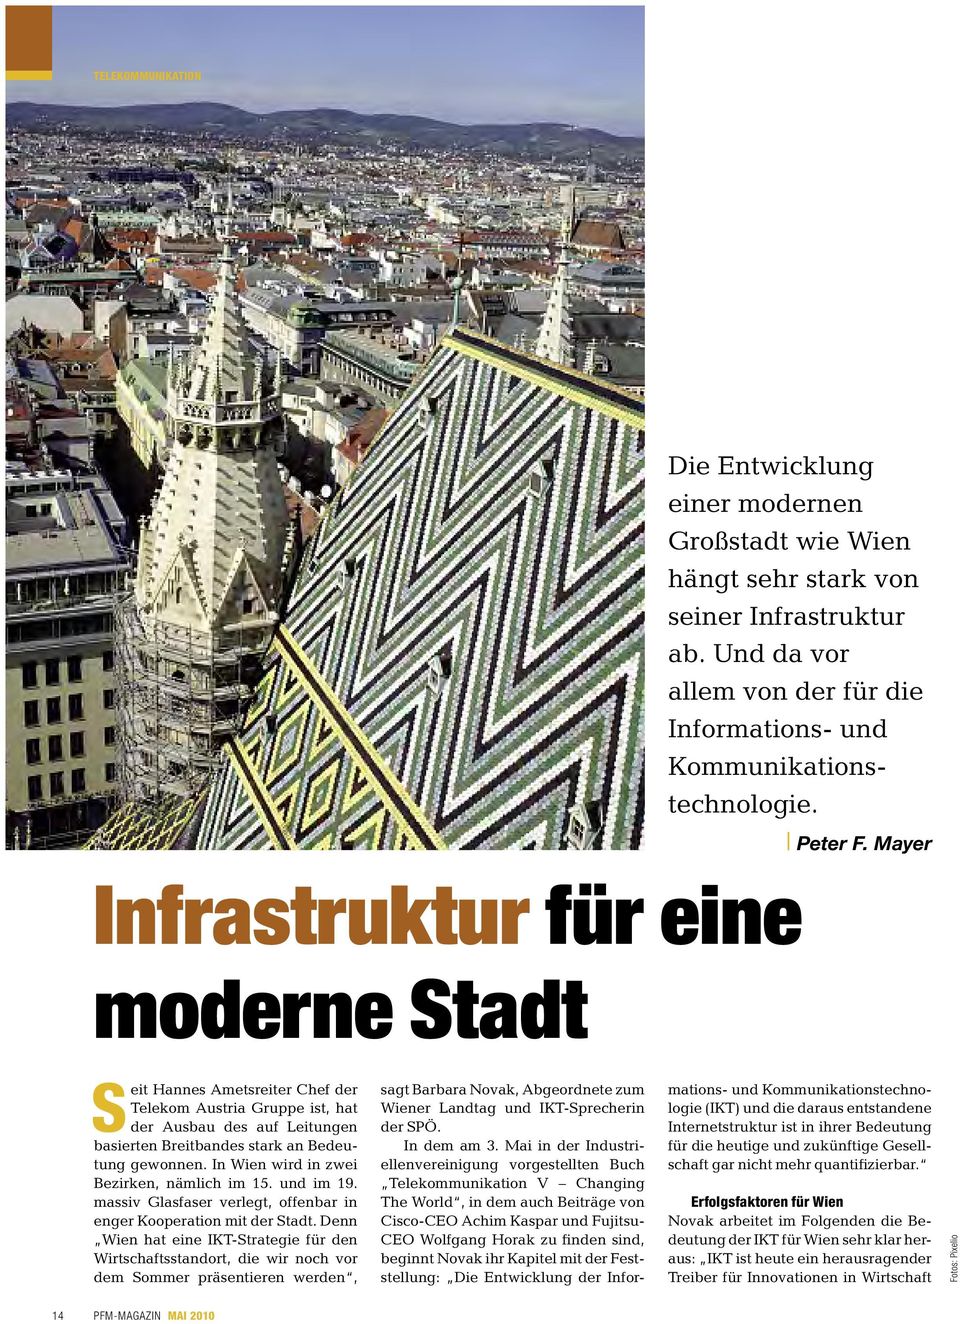 In Wien wird in zwei Bezirken, nämlich im 15. und im 19. massiv Glasfaser verlegt, offenbar in enger Kooperation mit der Stadt.